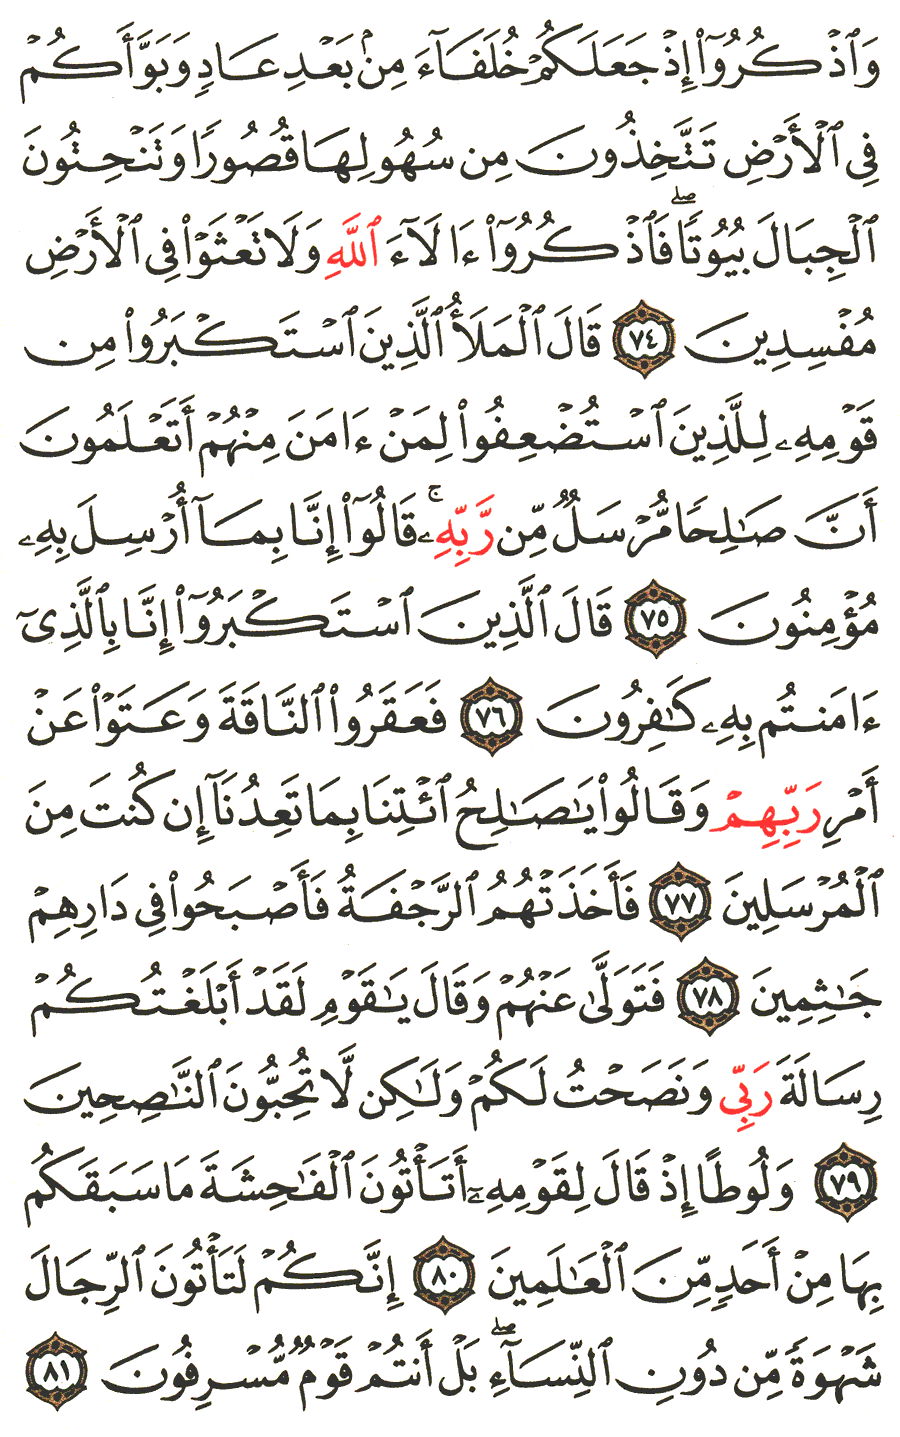 الصفحة رقم 160 من القرآن الكريم مكتوبة من المصحف